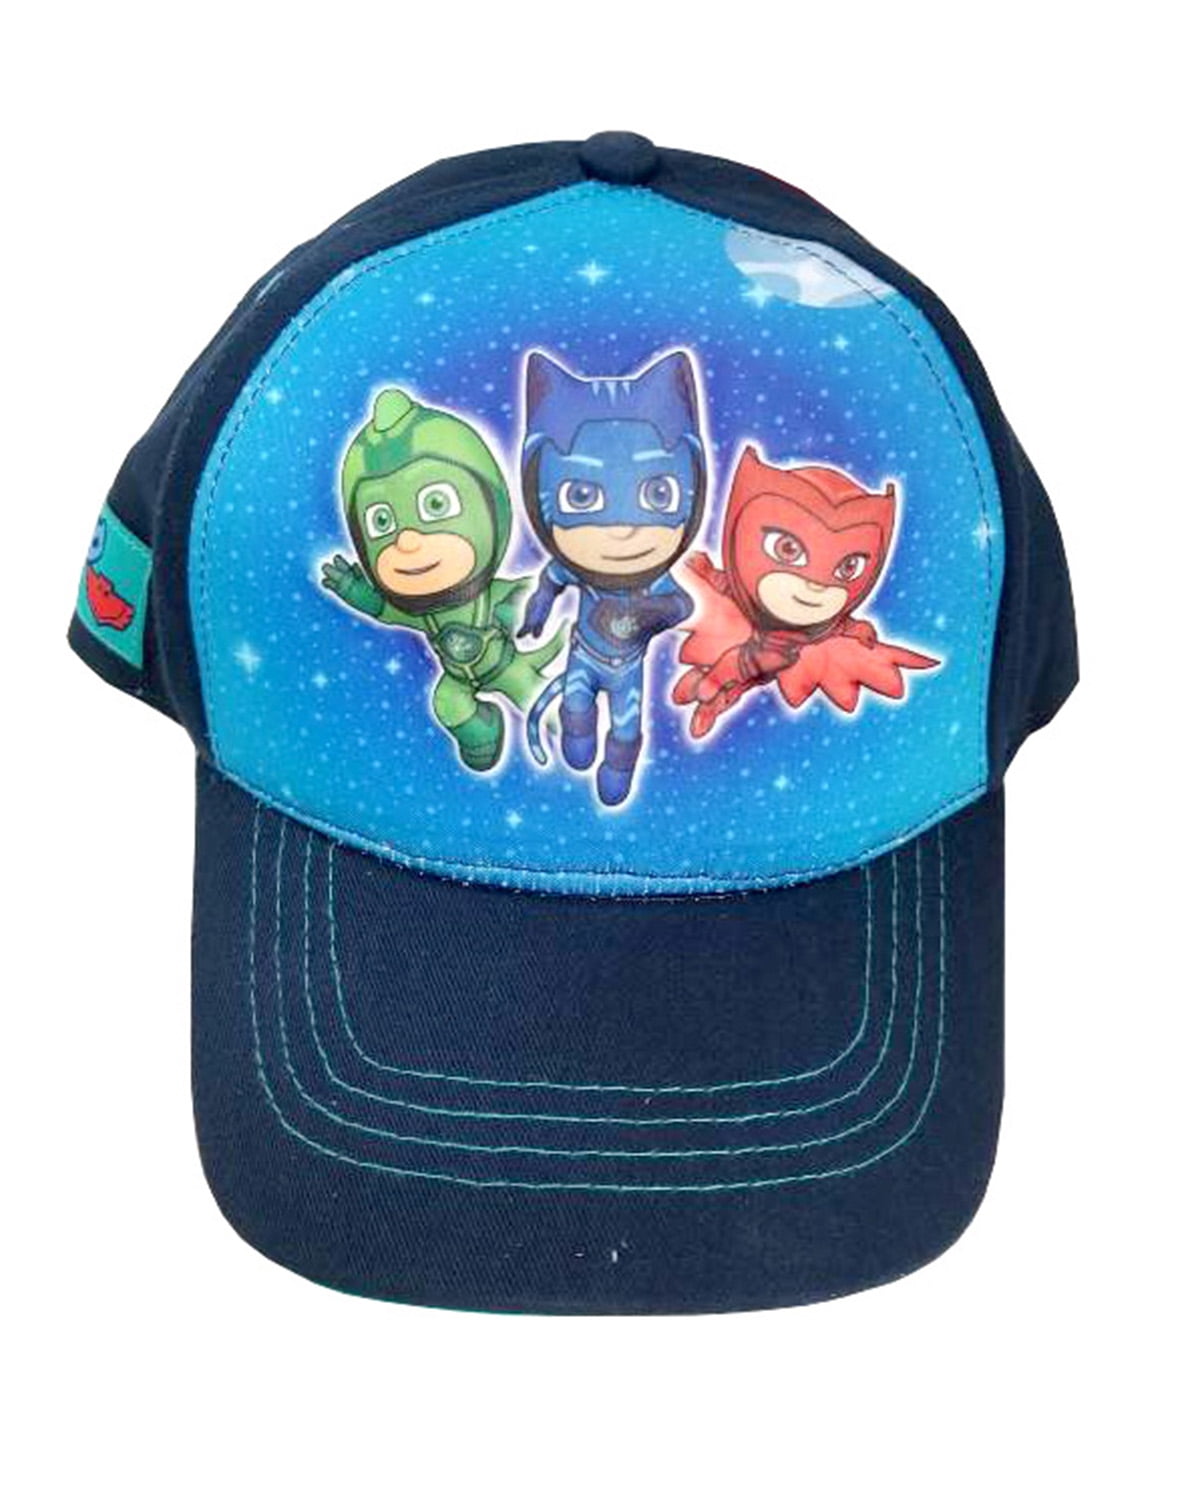 PJ Masks Boys Baseball Cap Hat Adjustable Strap Cartoon for Kids Red/Blue 